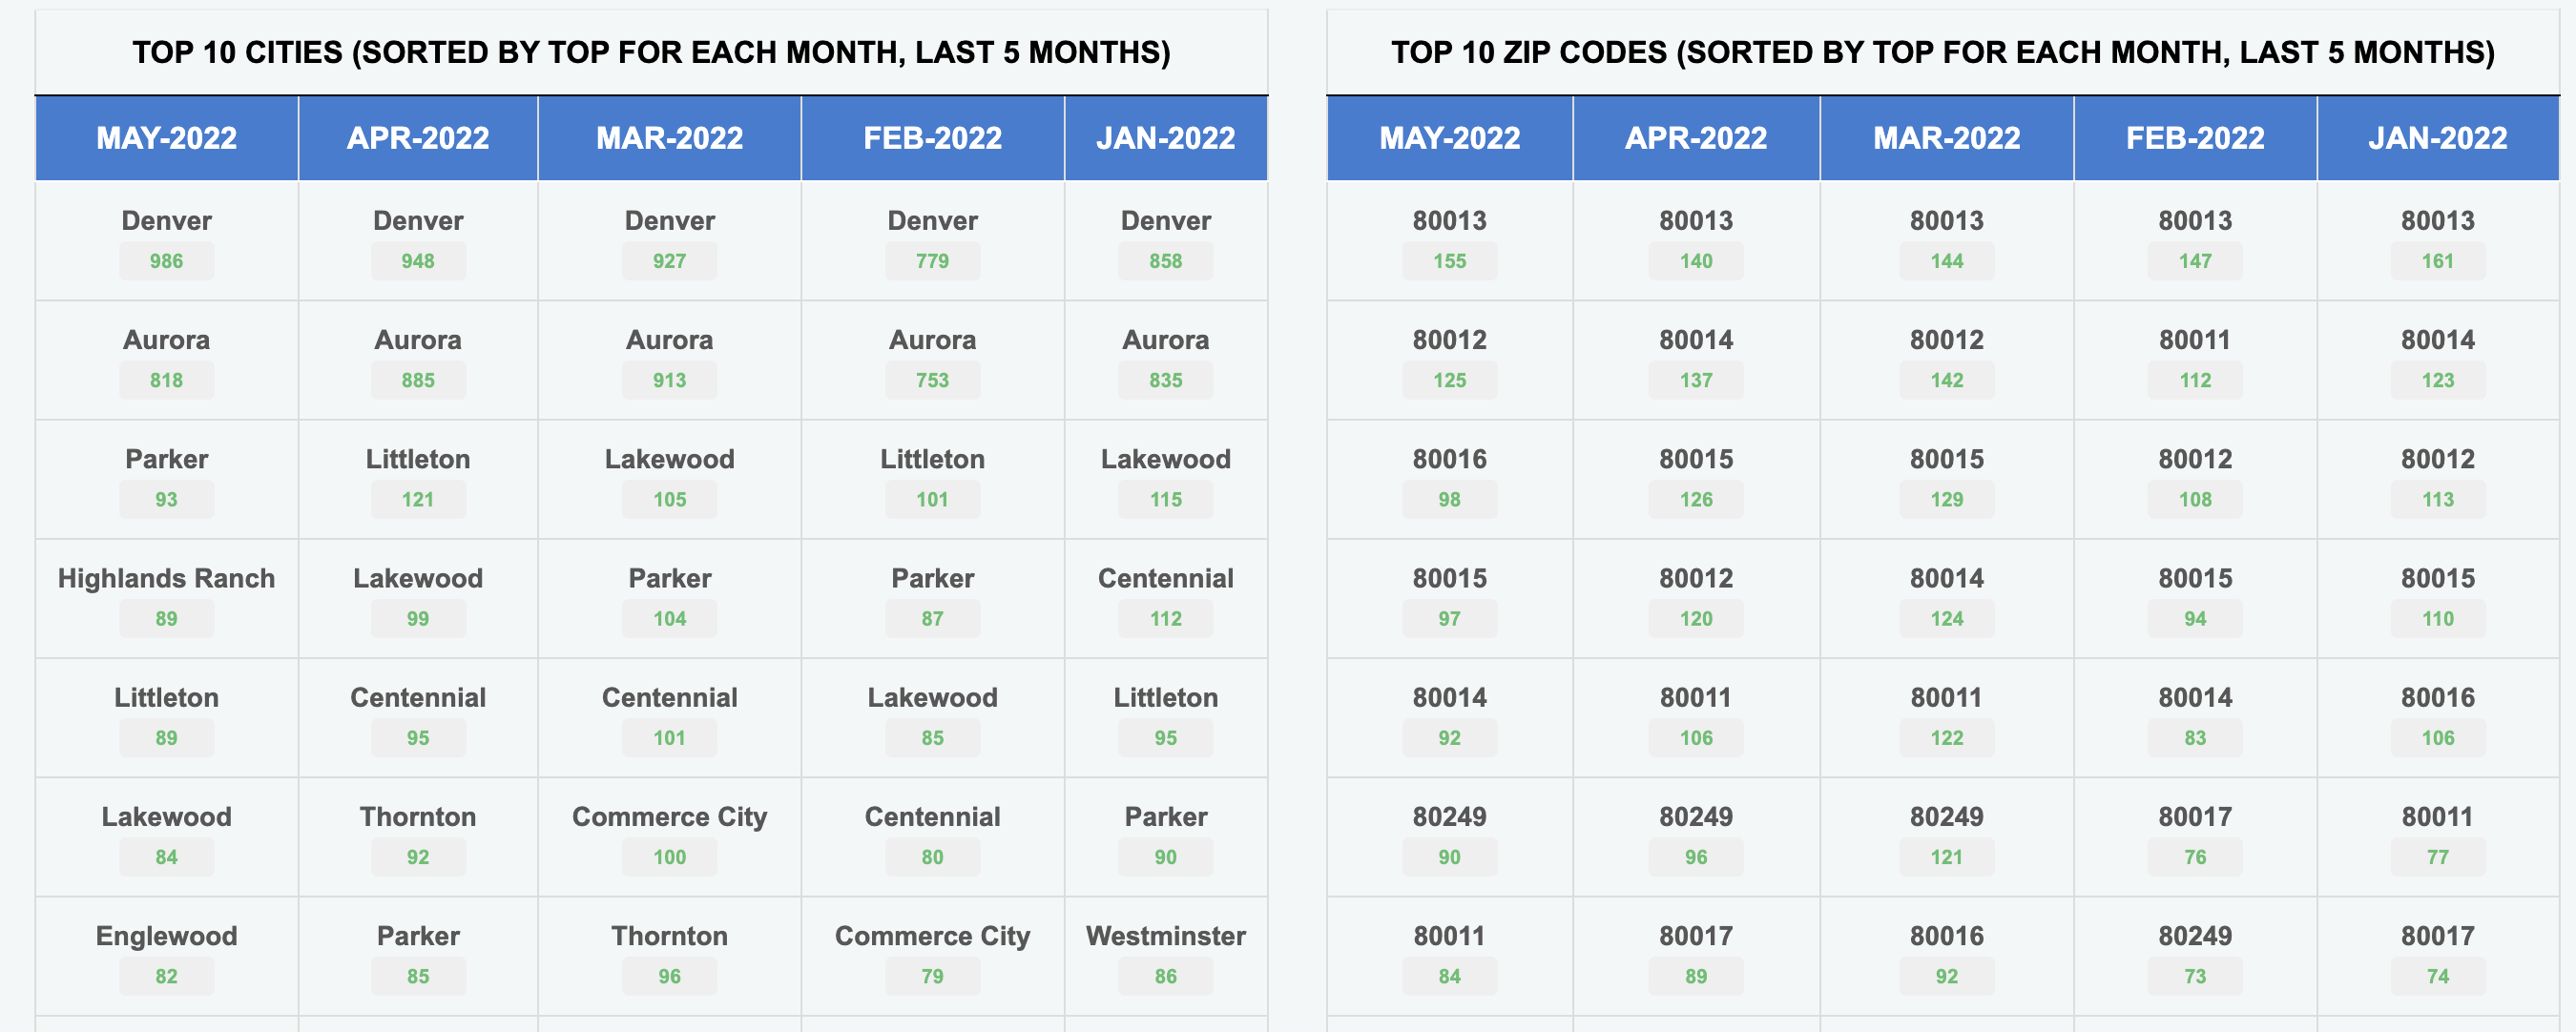 Top Cities and Zip Codes